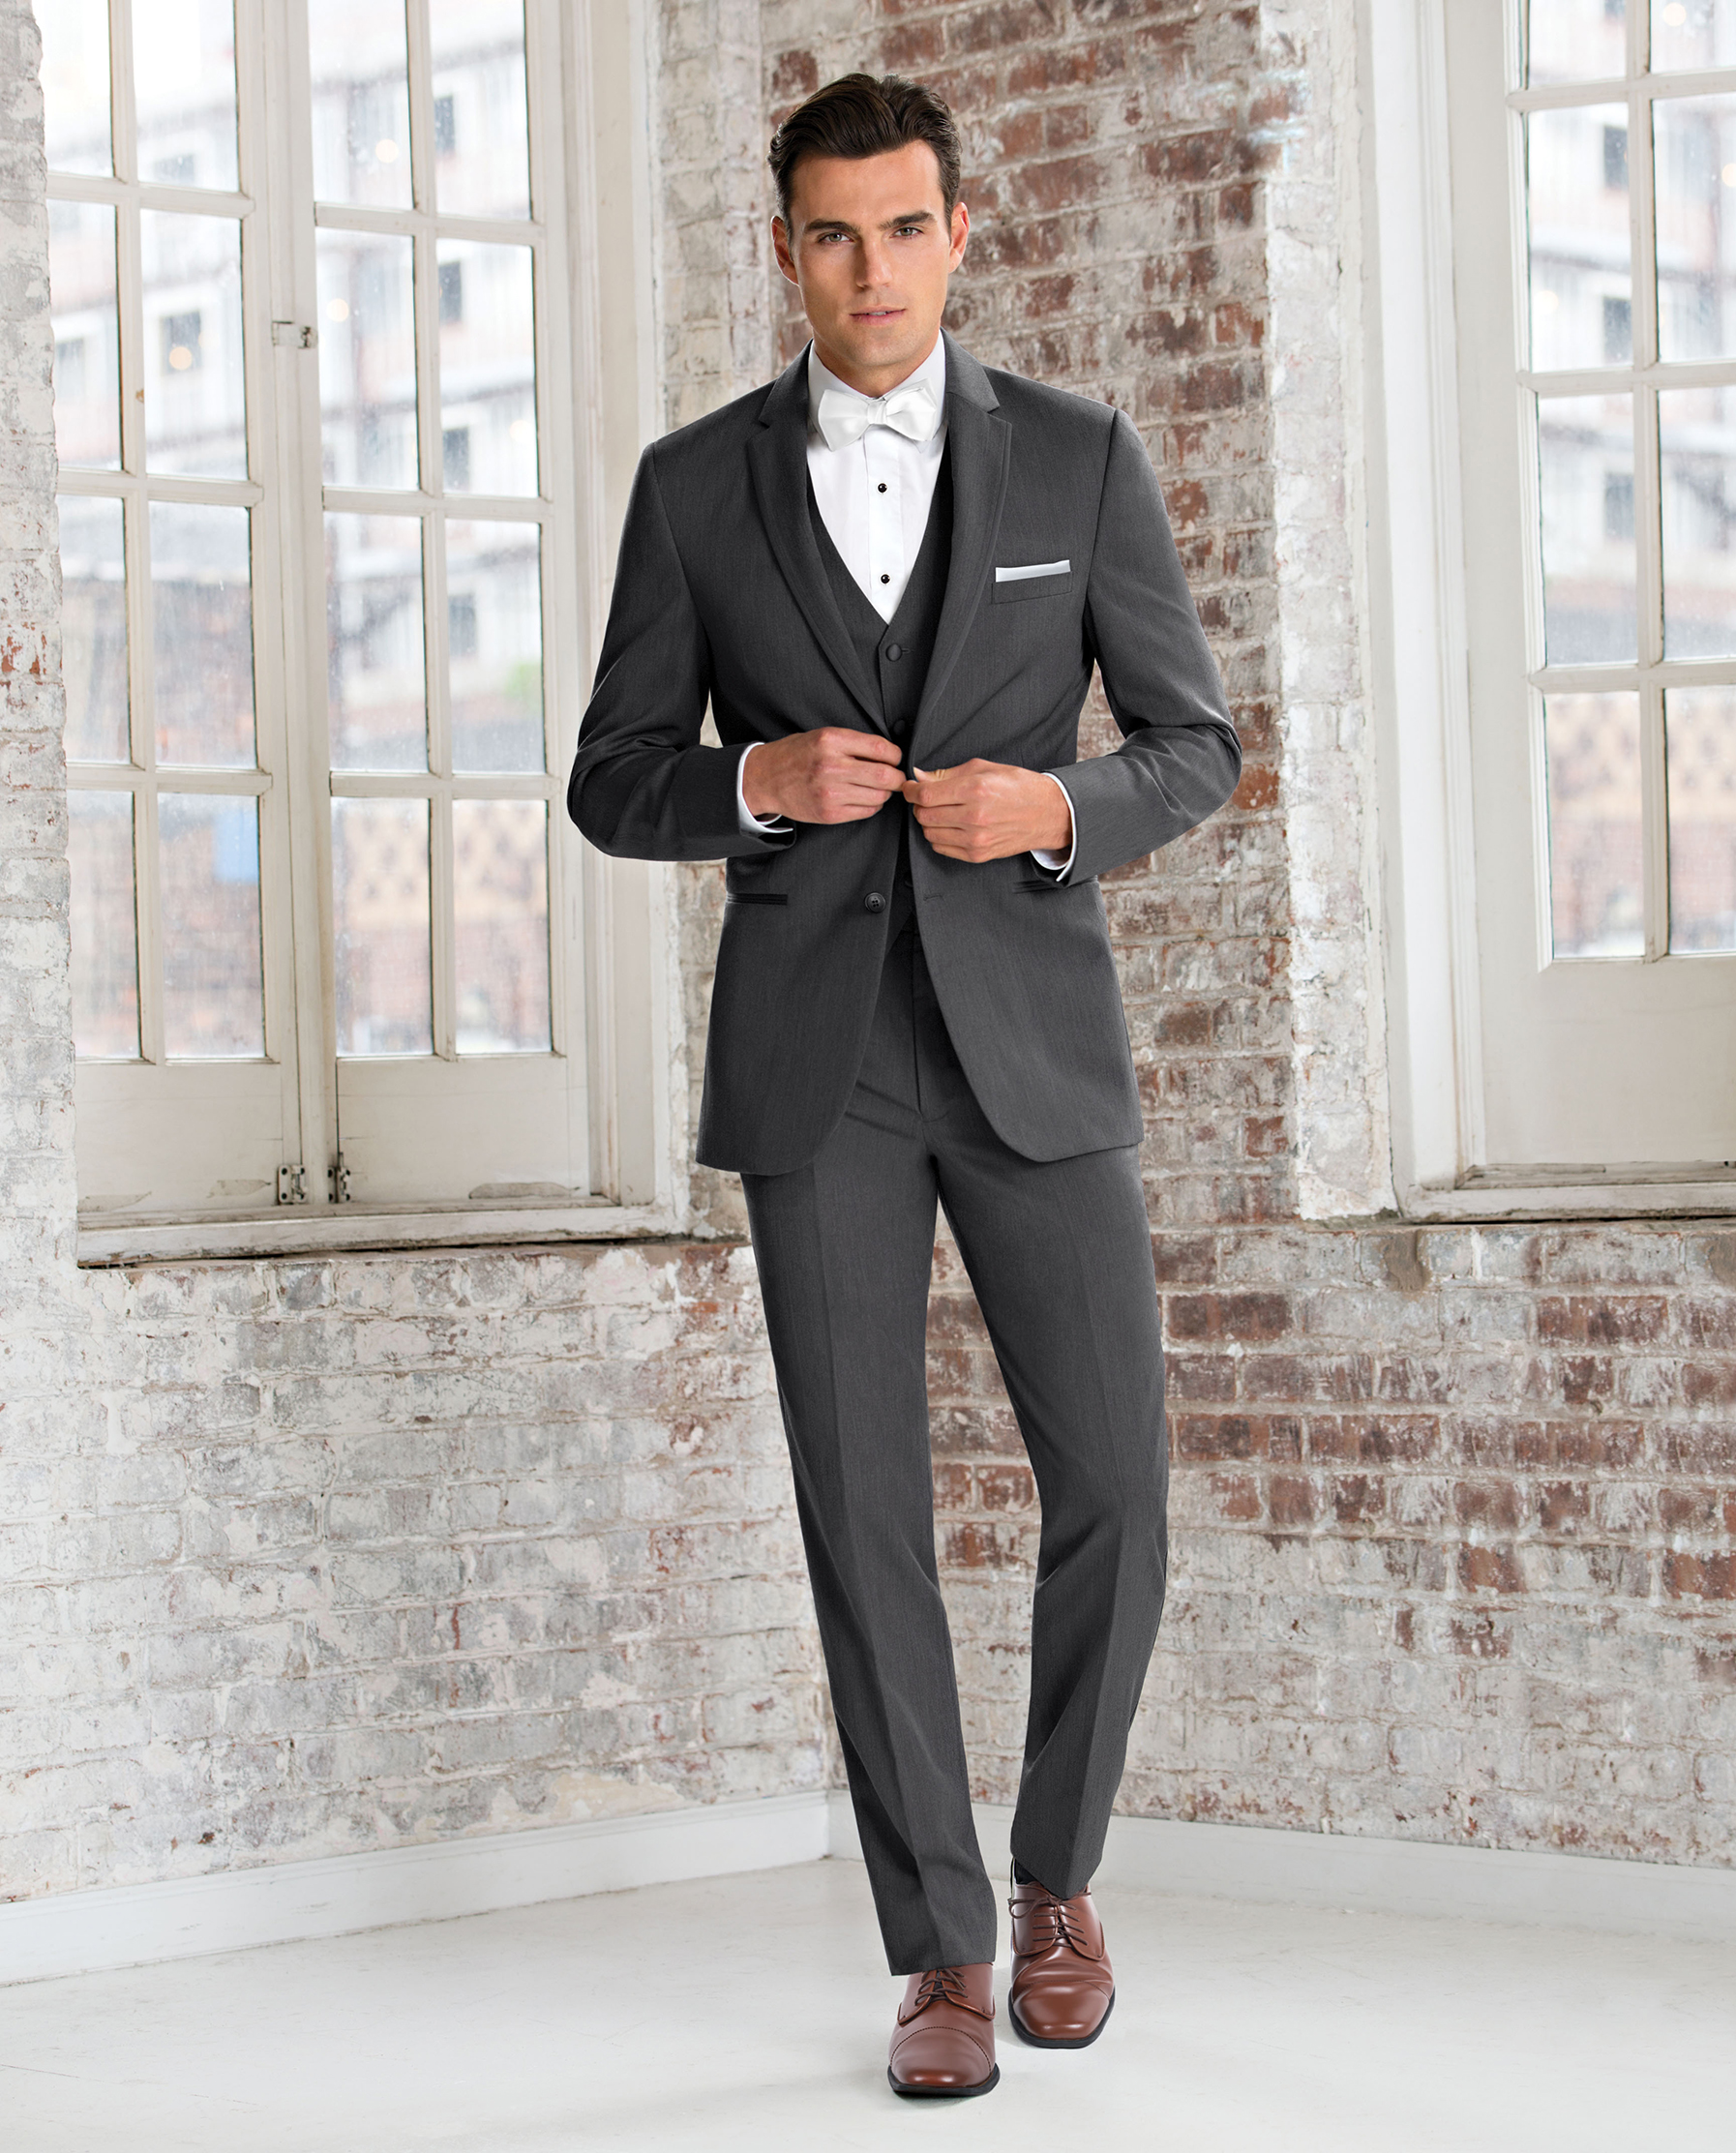 Michael Kors Tuxedo Style No. 391 - Black Tie Formalwear